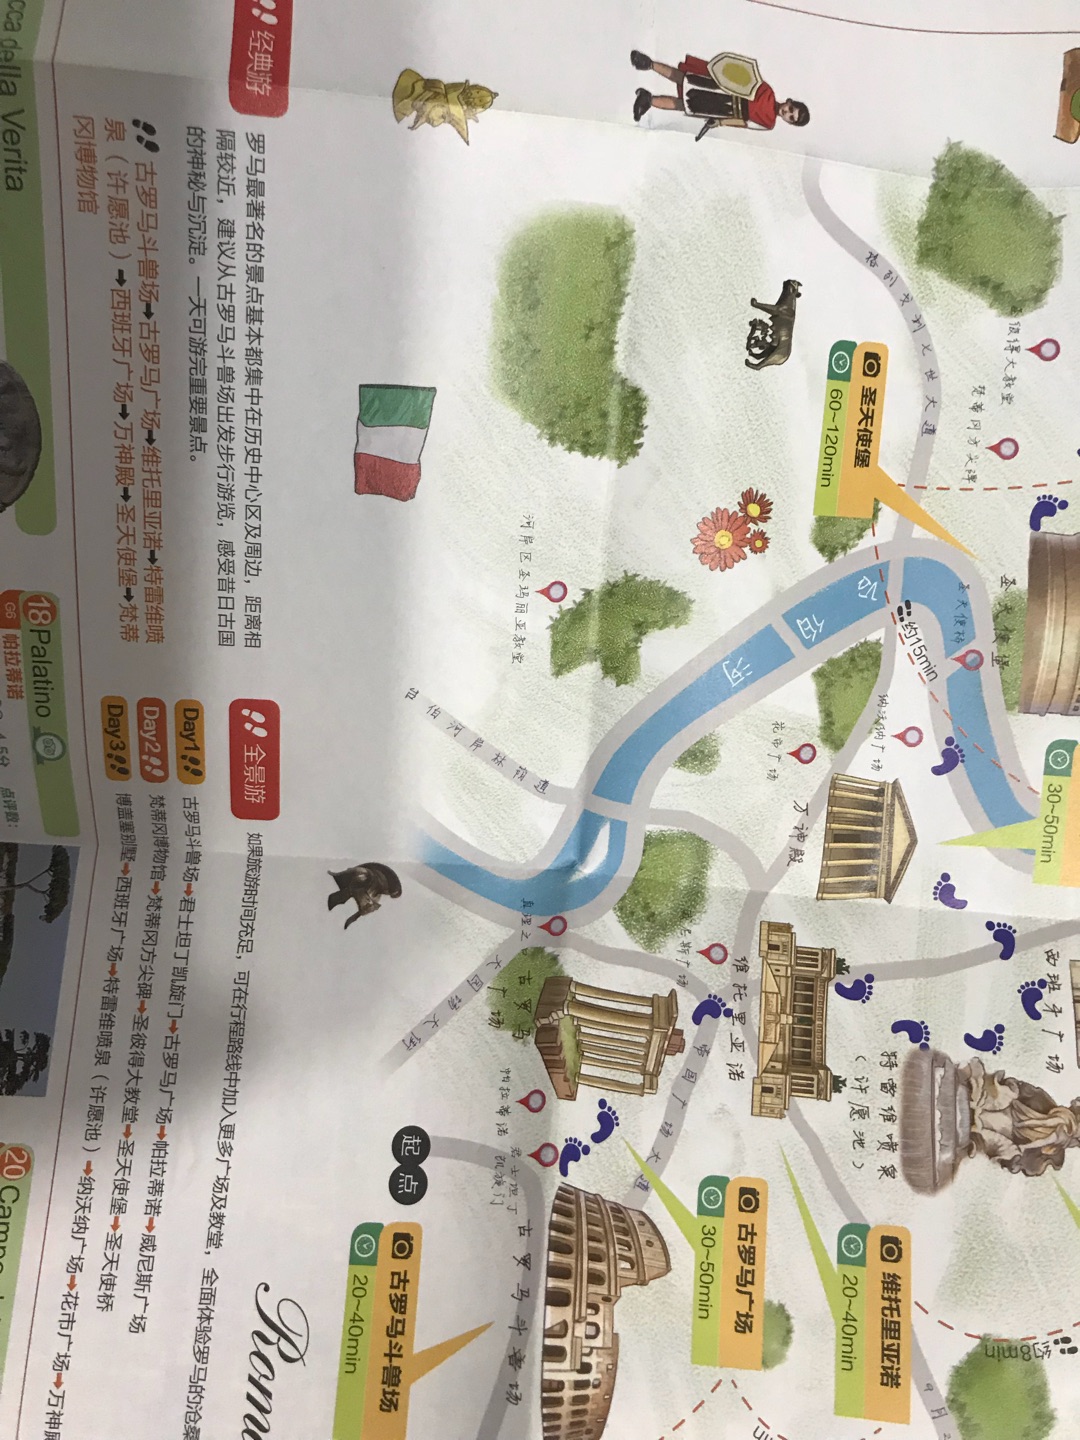 居然有中文语音讲解，太神奇了，推荐推荐！第一次见到这么实用的旅游图，太棒了！